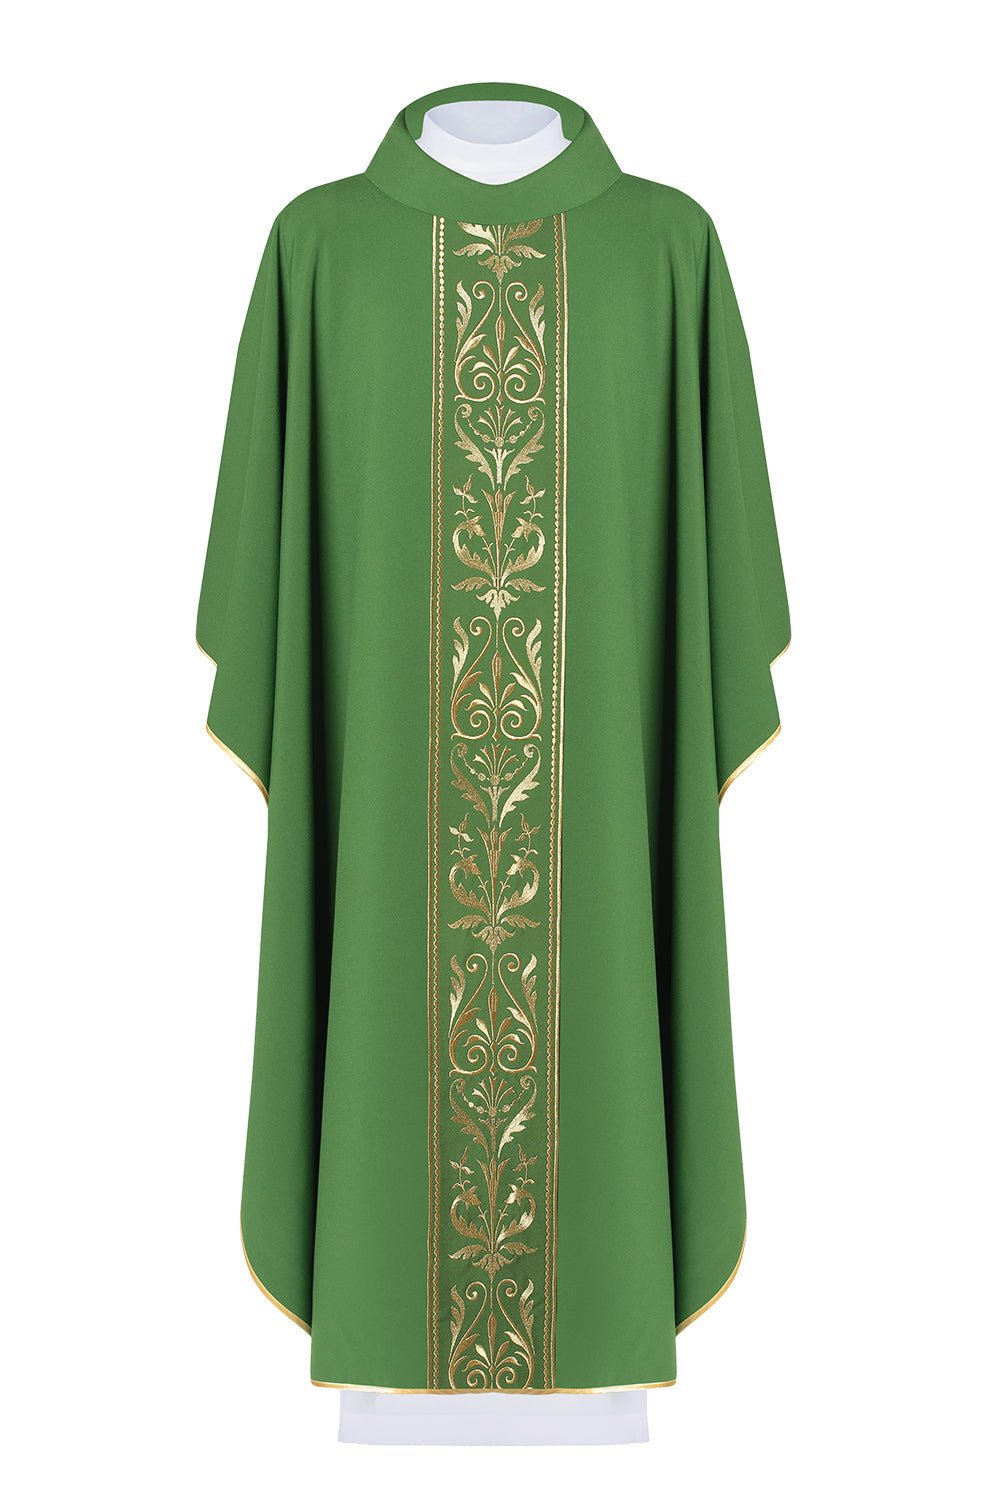 Zielony ornat liturgiczny zdobiony złotym pasem haftowanym